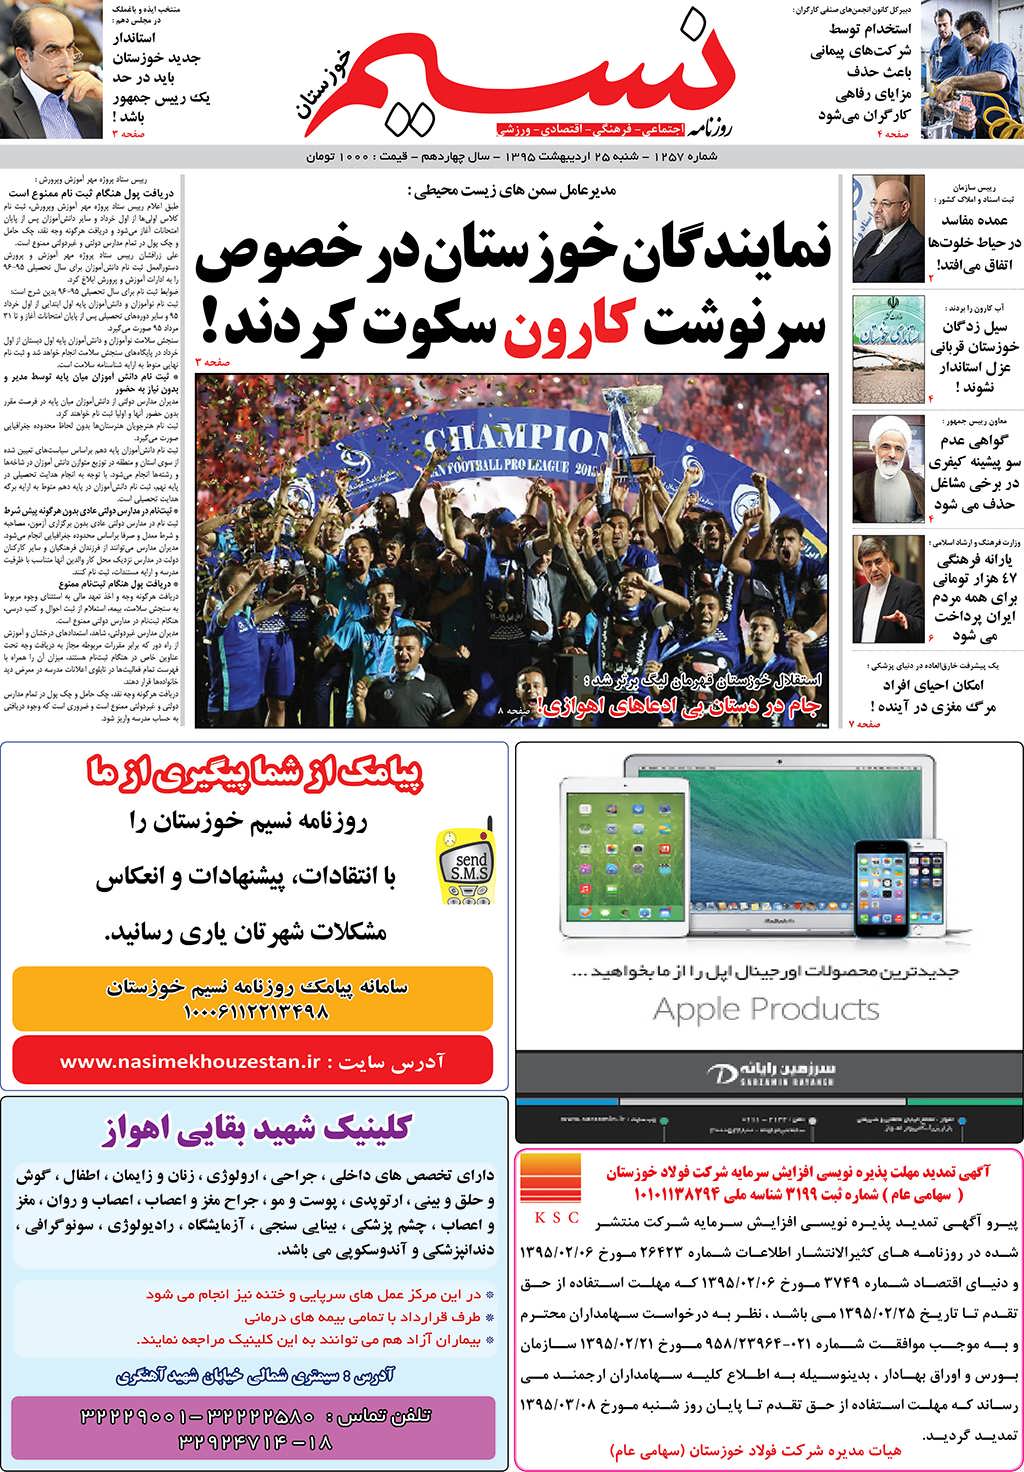 صفحه اصلی روزنامه نسیم شماره 1257